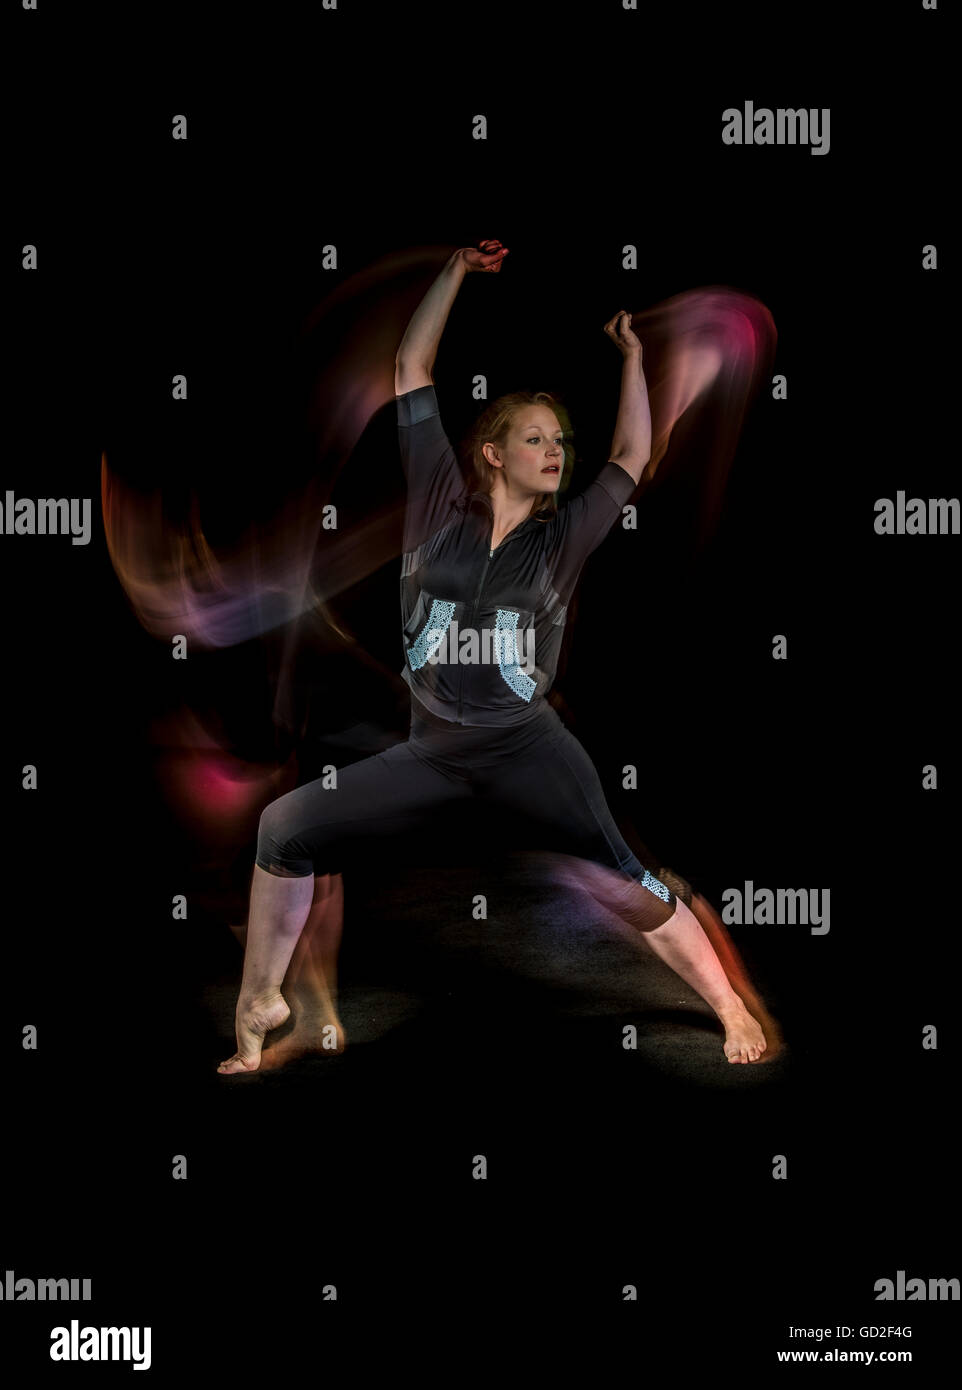 dancer woman  light movement blur Stock Photo